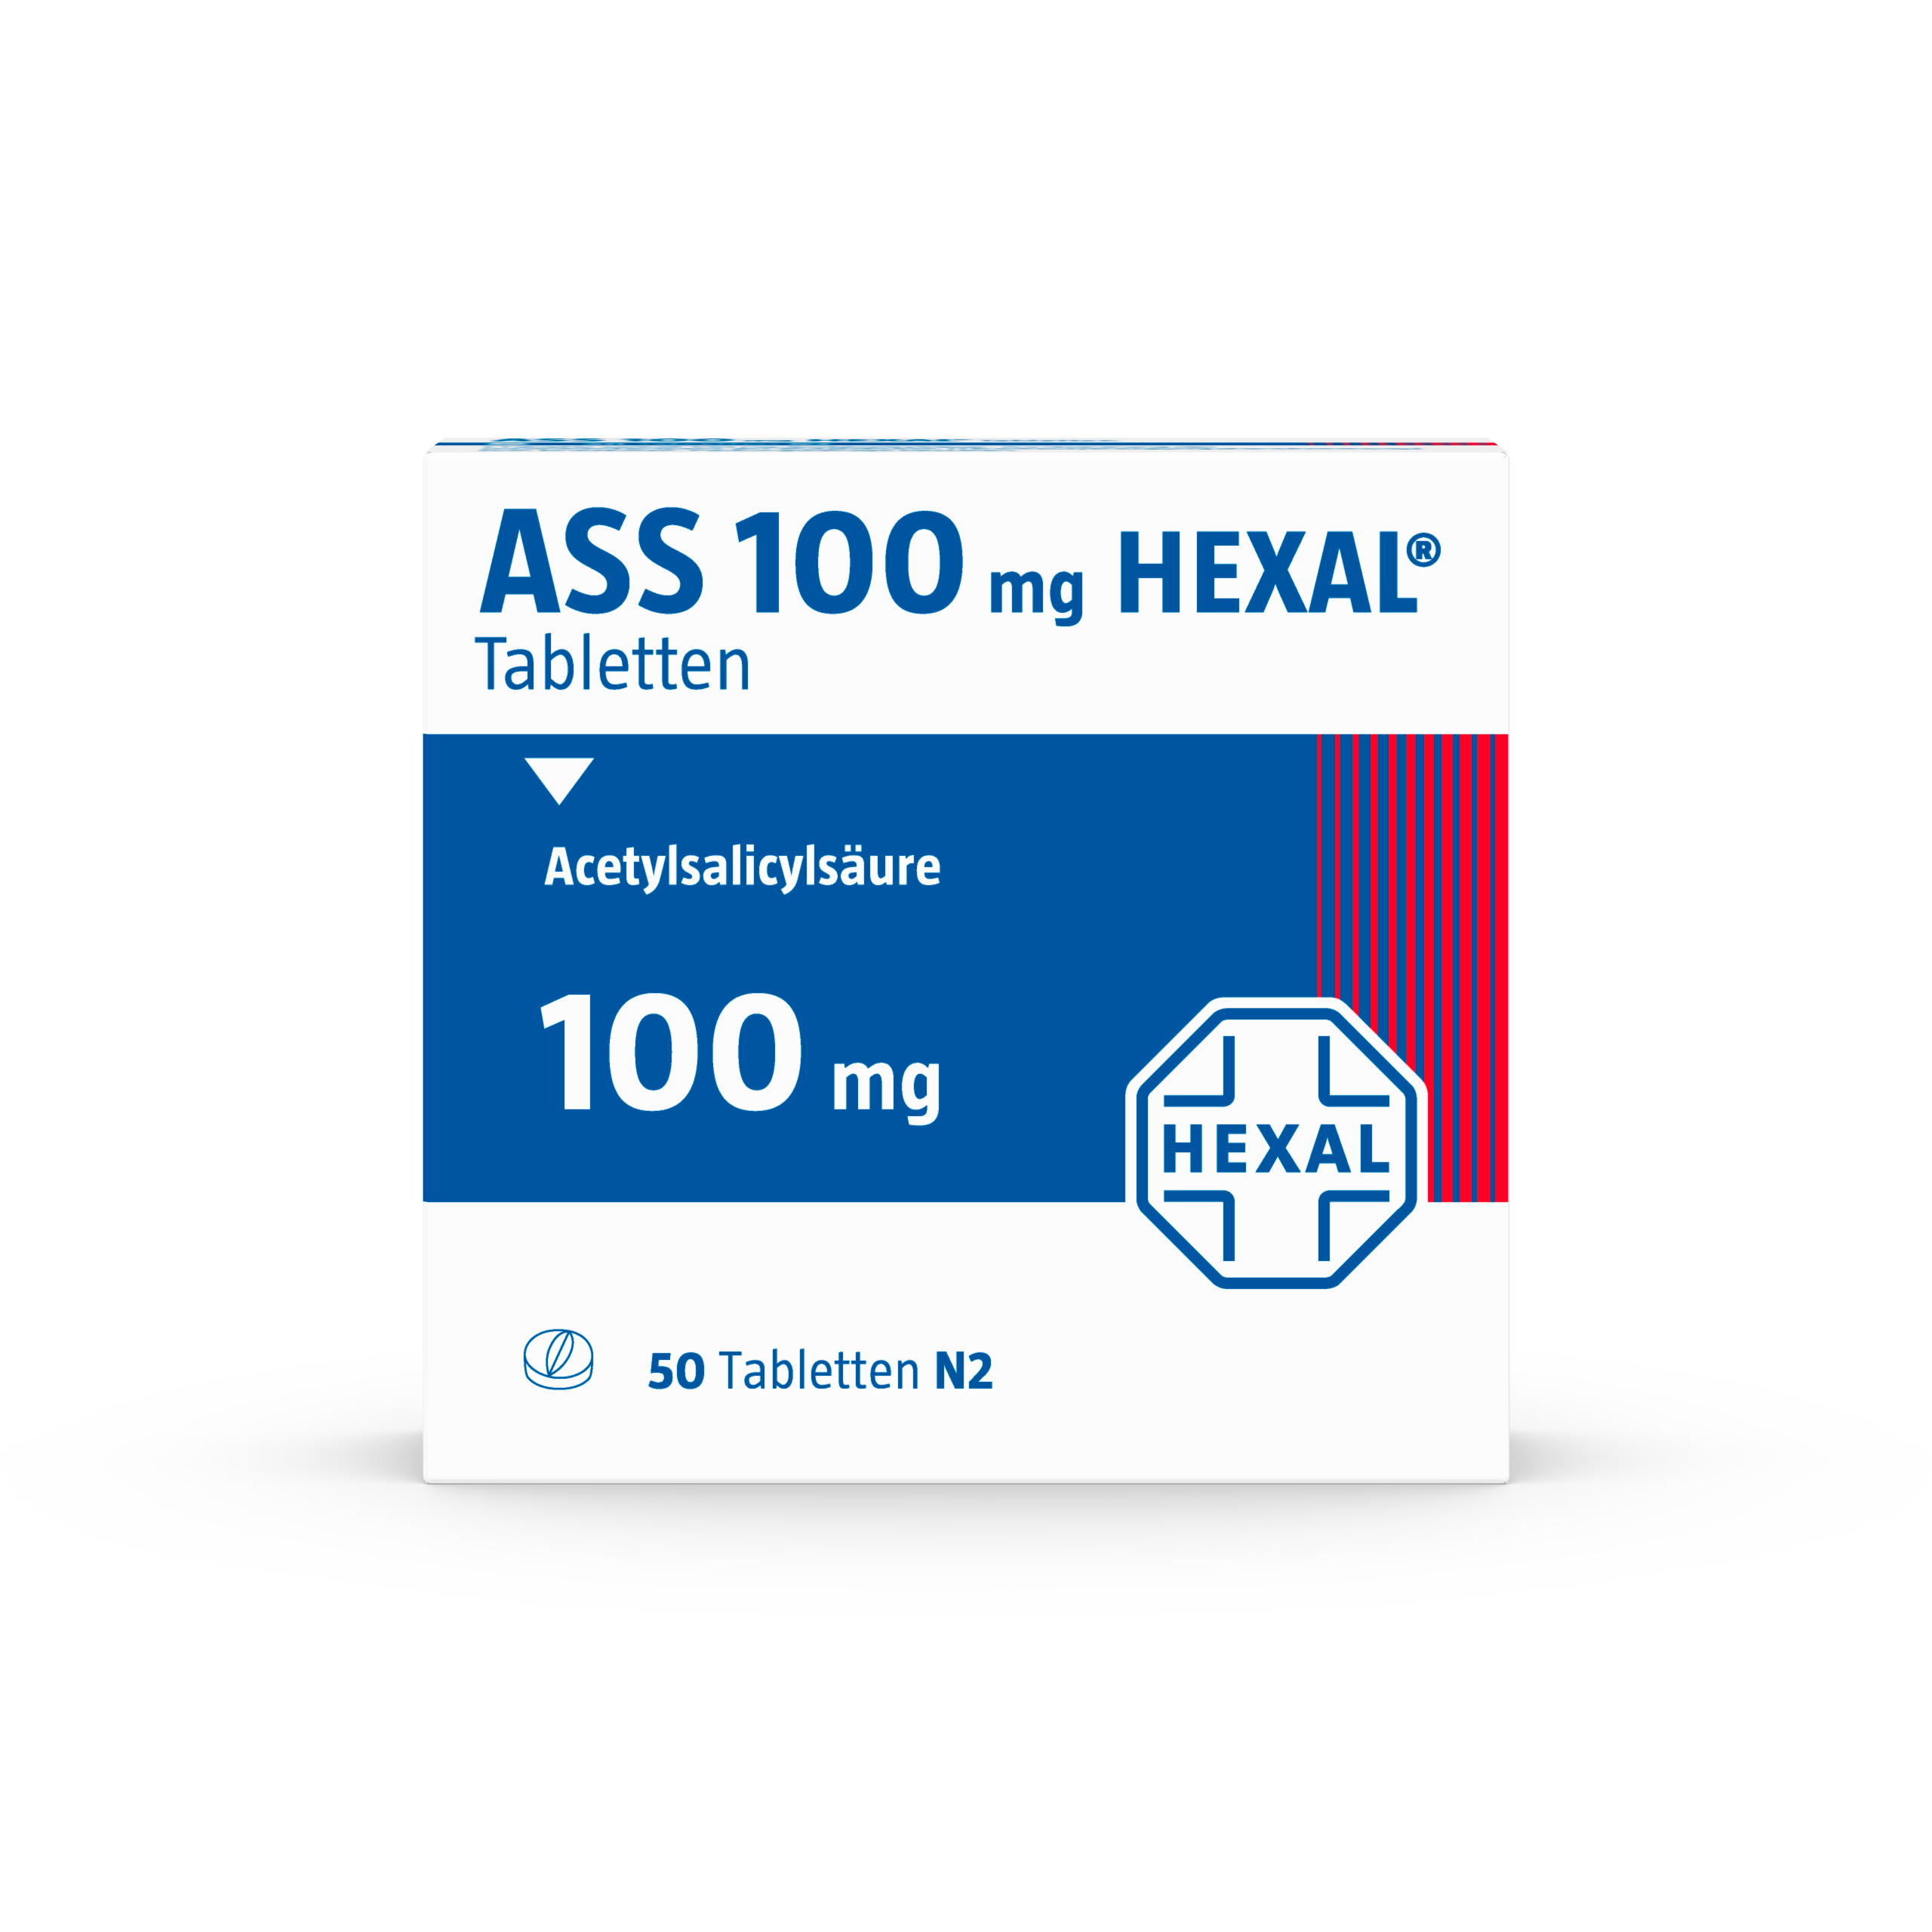 ASS 100mg HEXAL (50 stk)